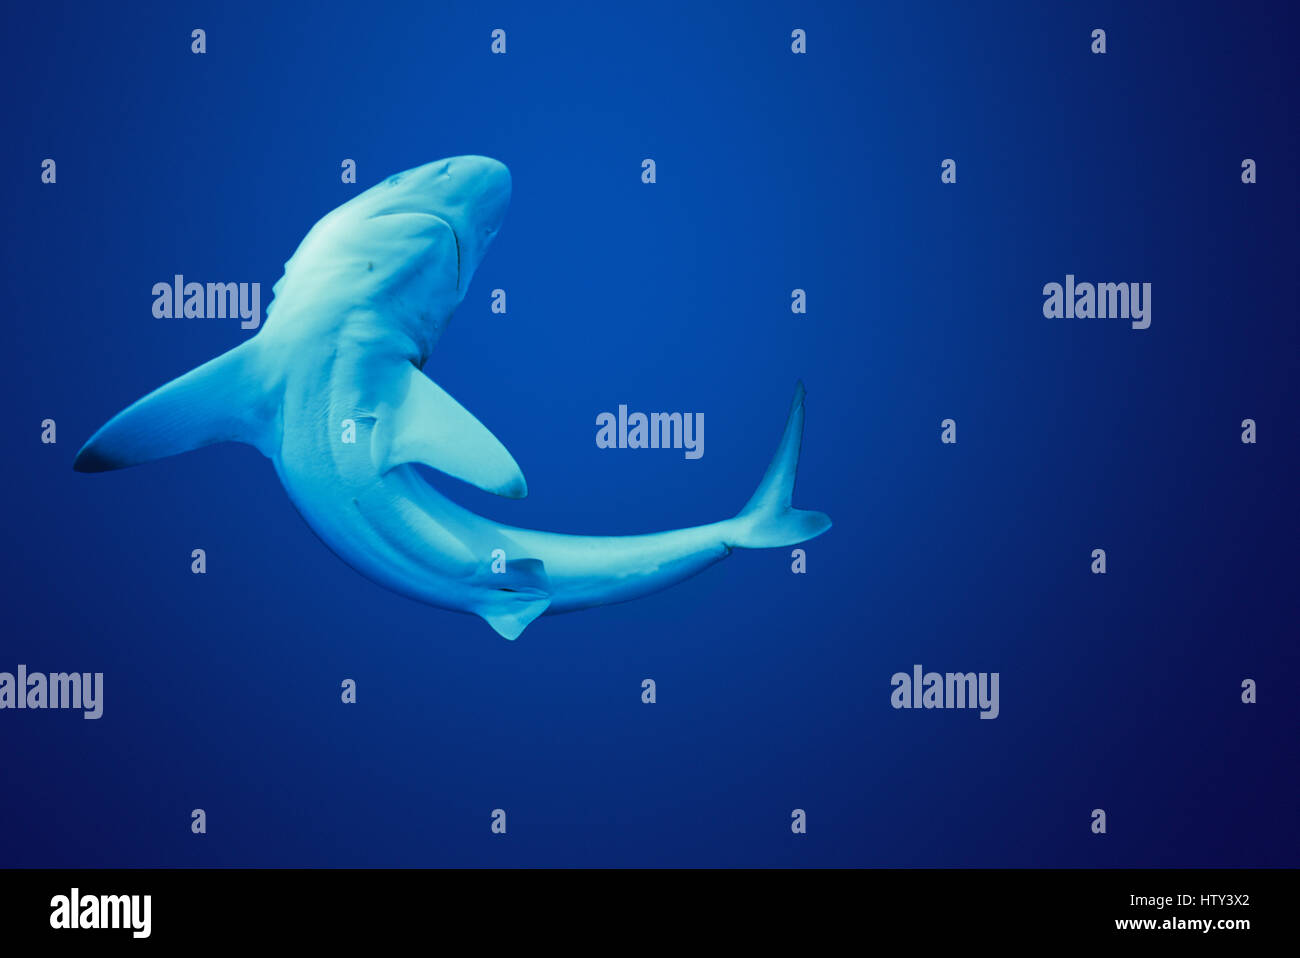 Oceanic juvénile Blacktip Shark (Carcharhinus limbatus), Cocos Island, 320 milles au large de Costa Rica - Océan Pacifique. Numérique de l'image manipulée. Banque D'Images